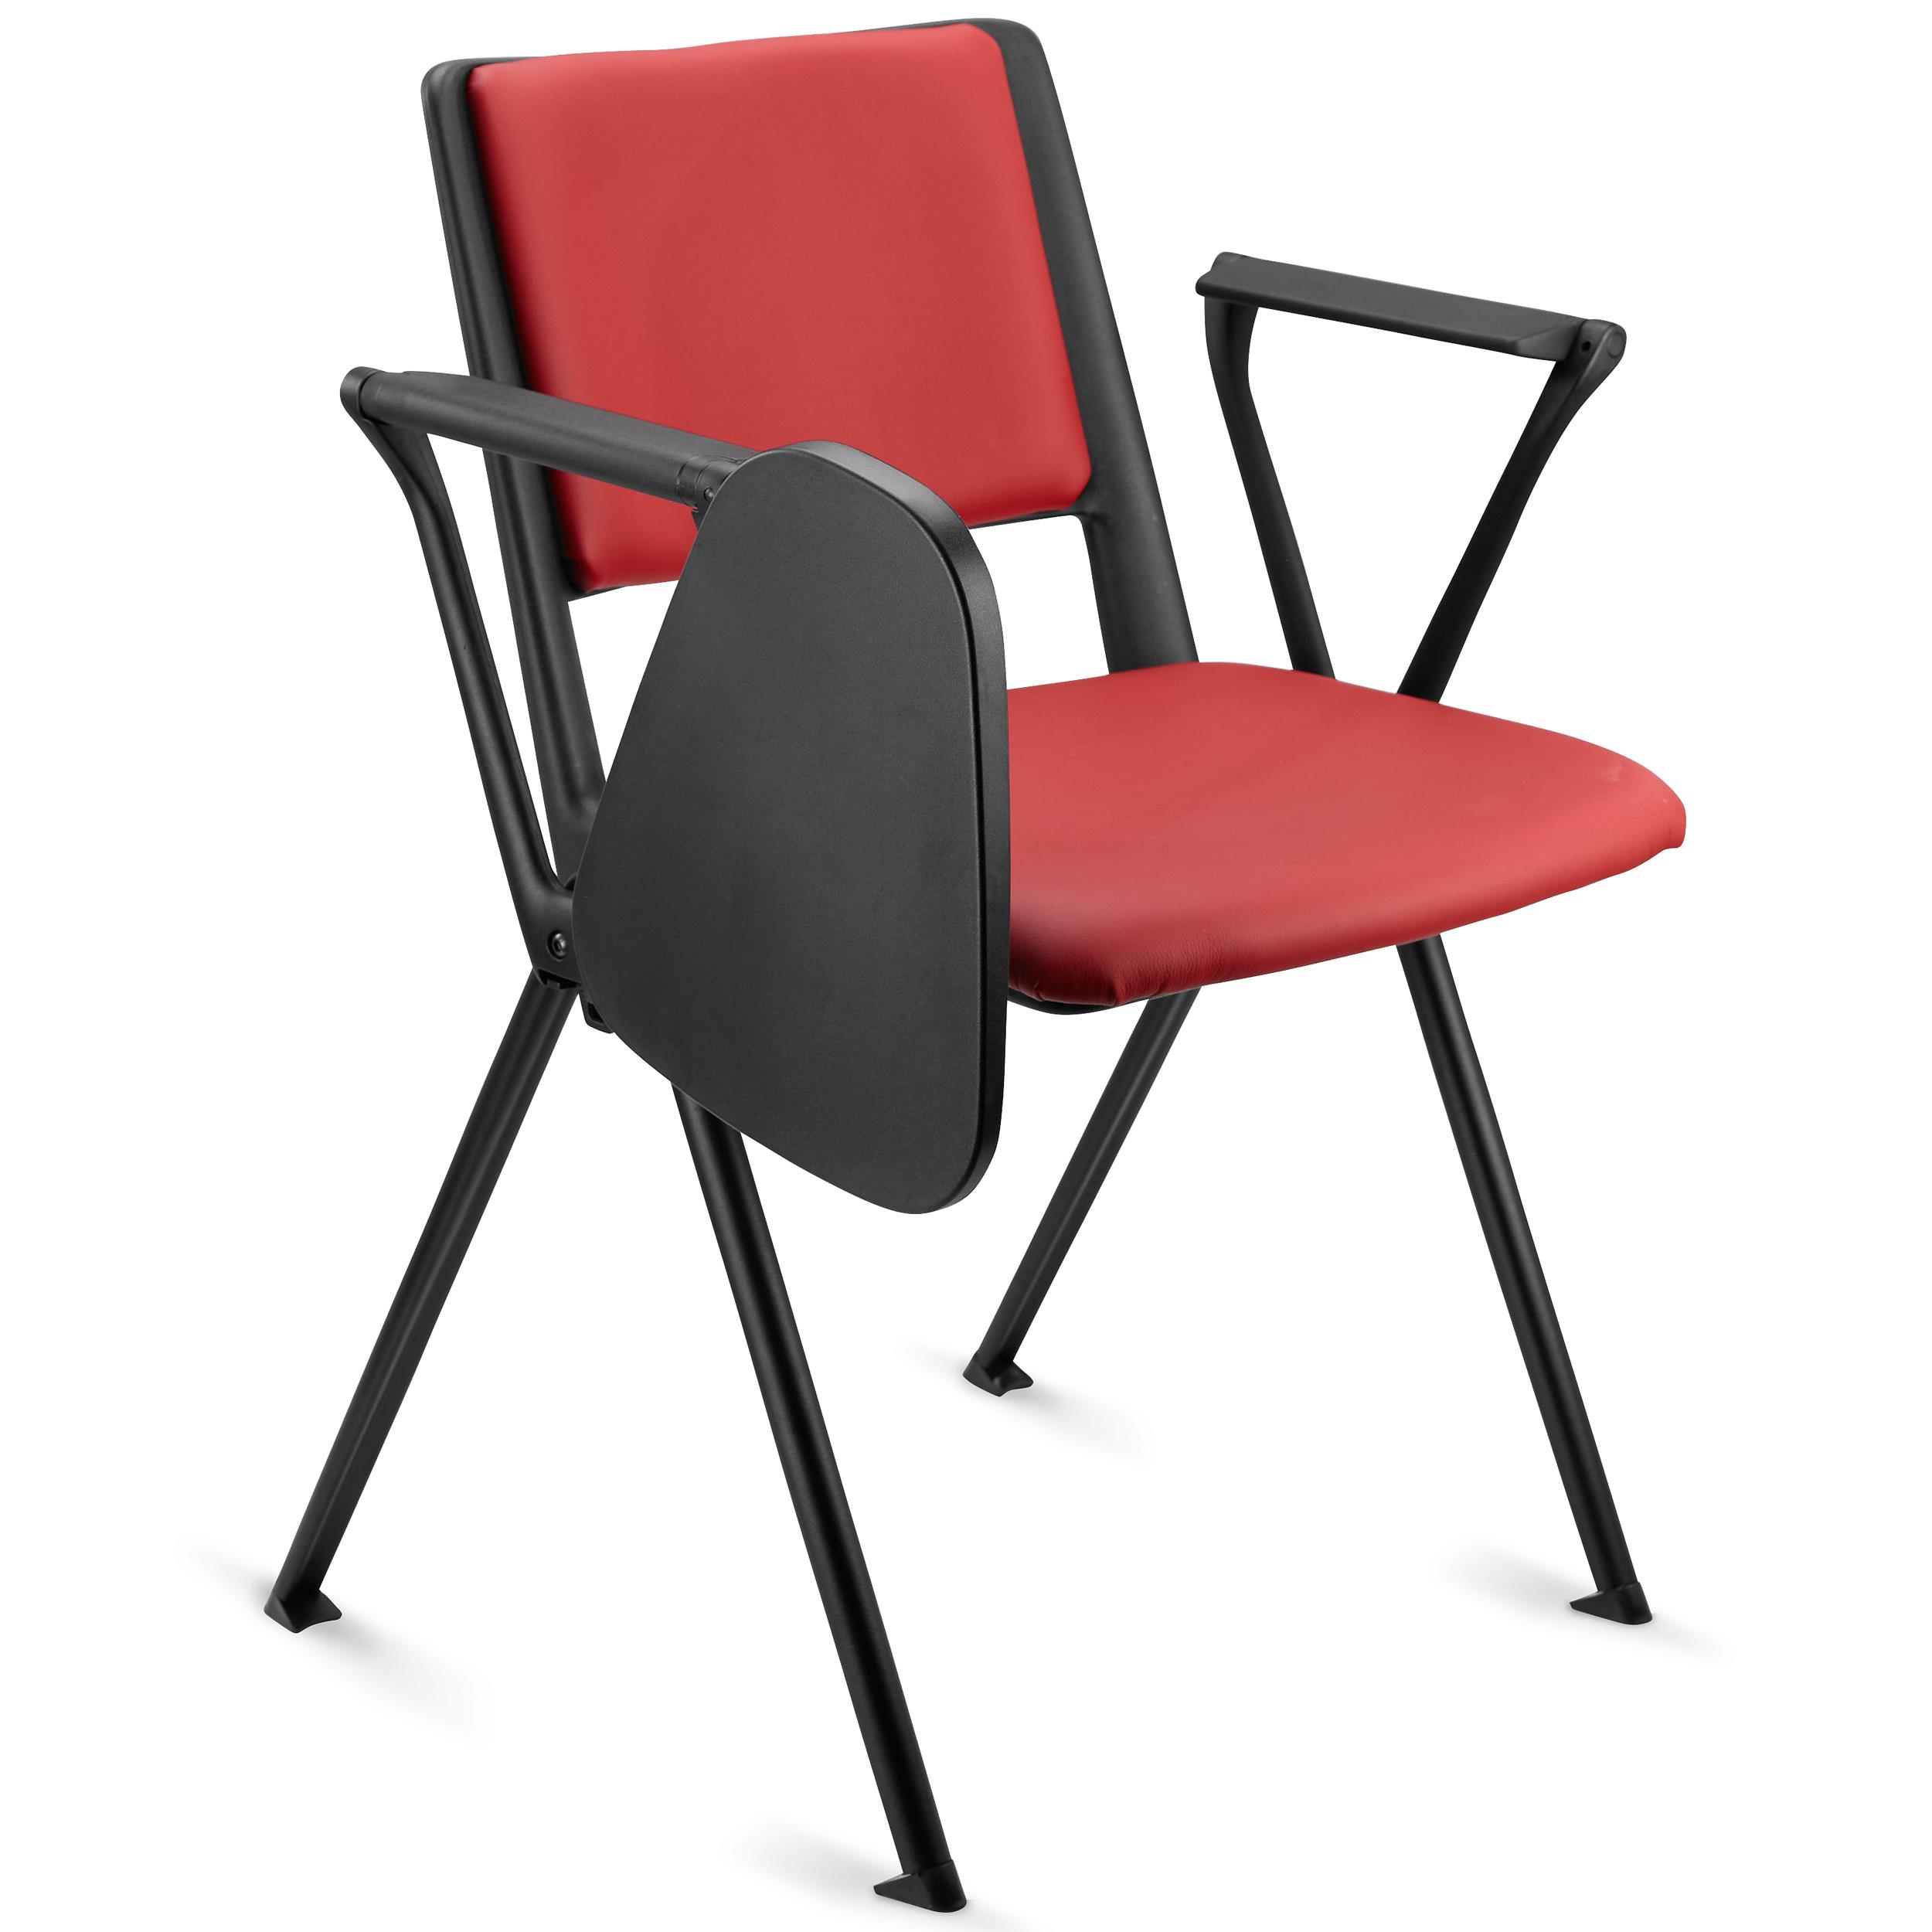 Konferenzstuhl CARINA MIT SCHREIBBRETT, stapel- und reihenverbindbar, schwarzes Stahlgestell, Kunstleder, Farbe Rot